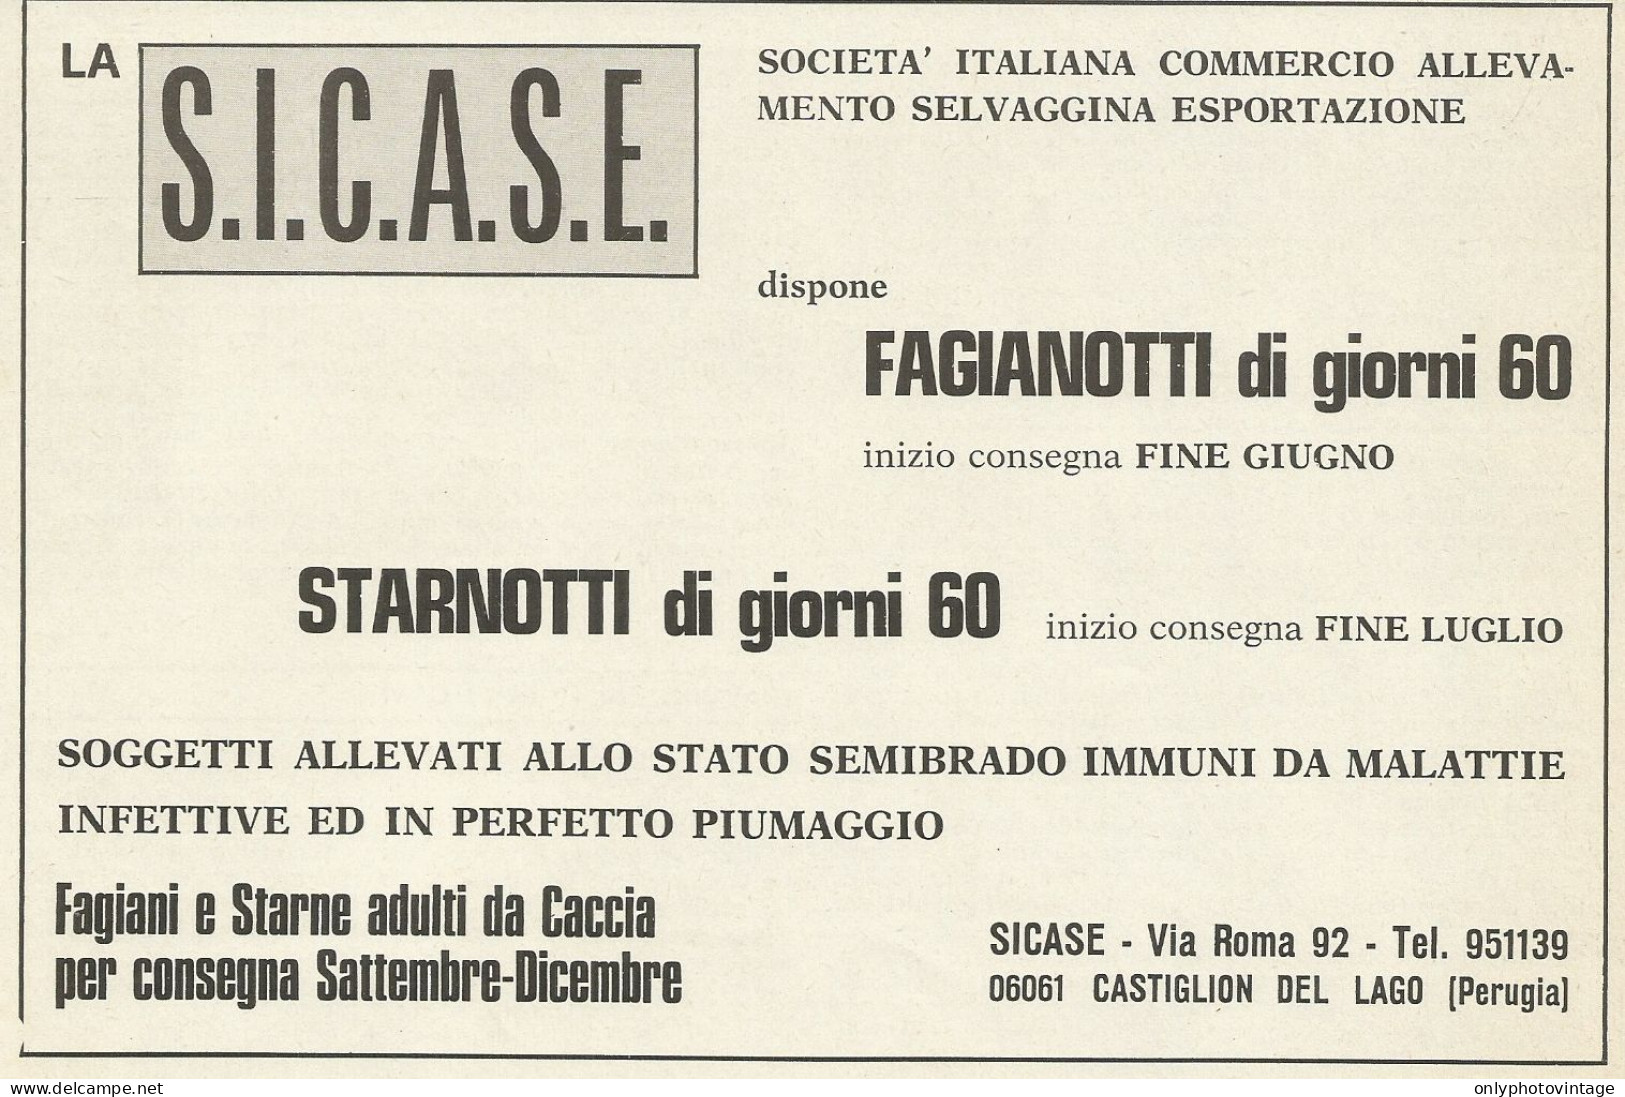 Allevamento Selvaggina S.I.C.A.S.E. - Pubblicità 1969 - Advertising - Advertising